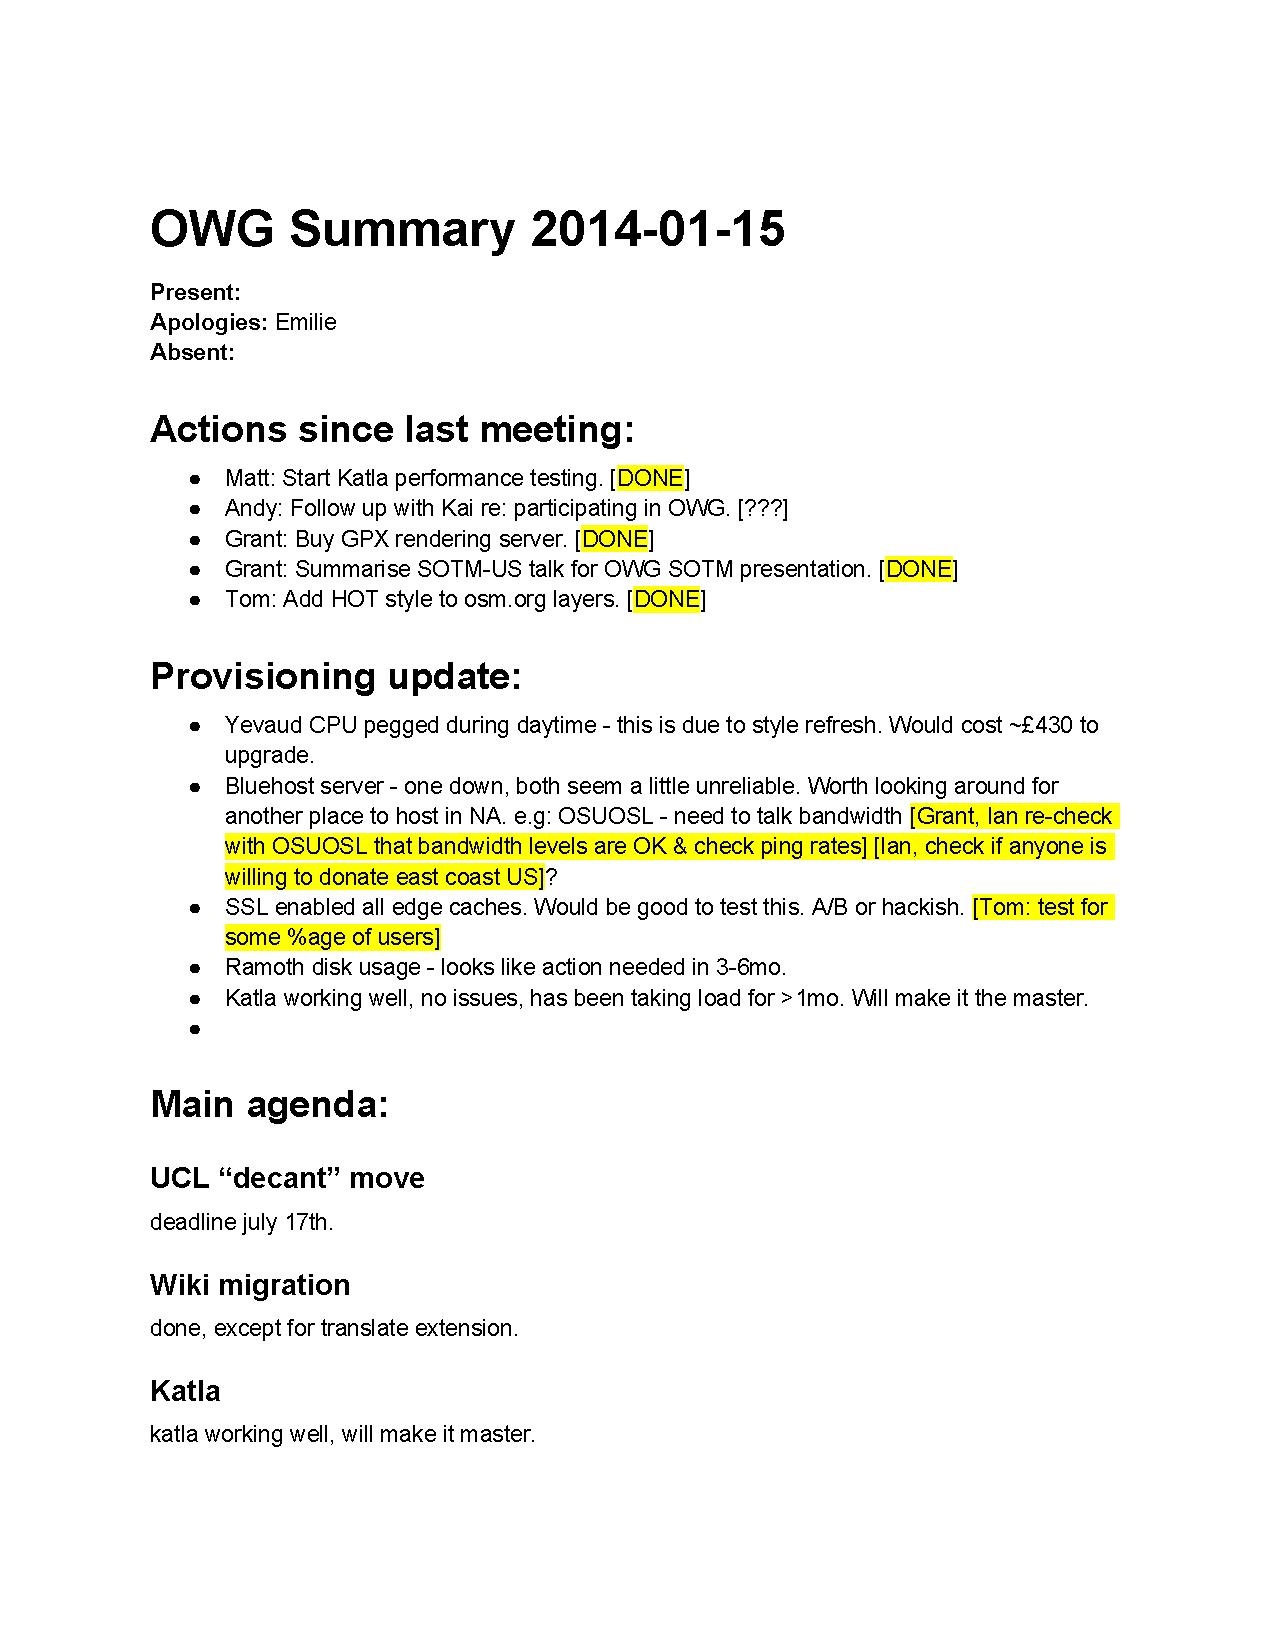 OWG Summary 2014-01-15.pdf